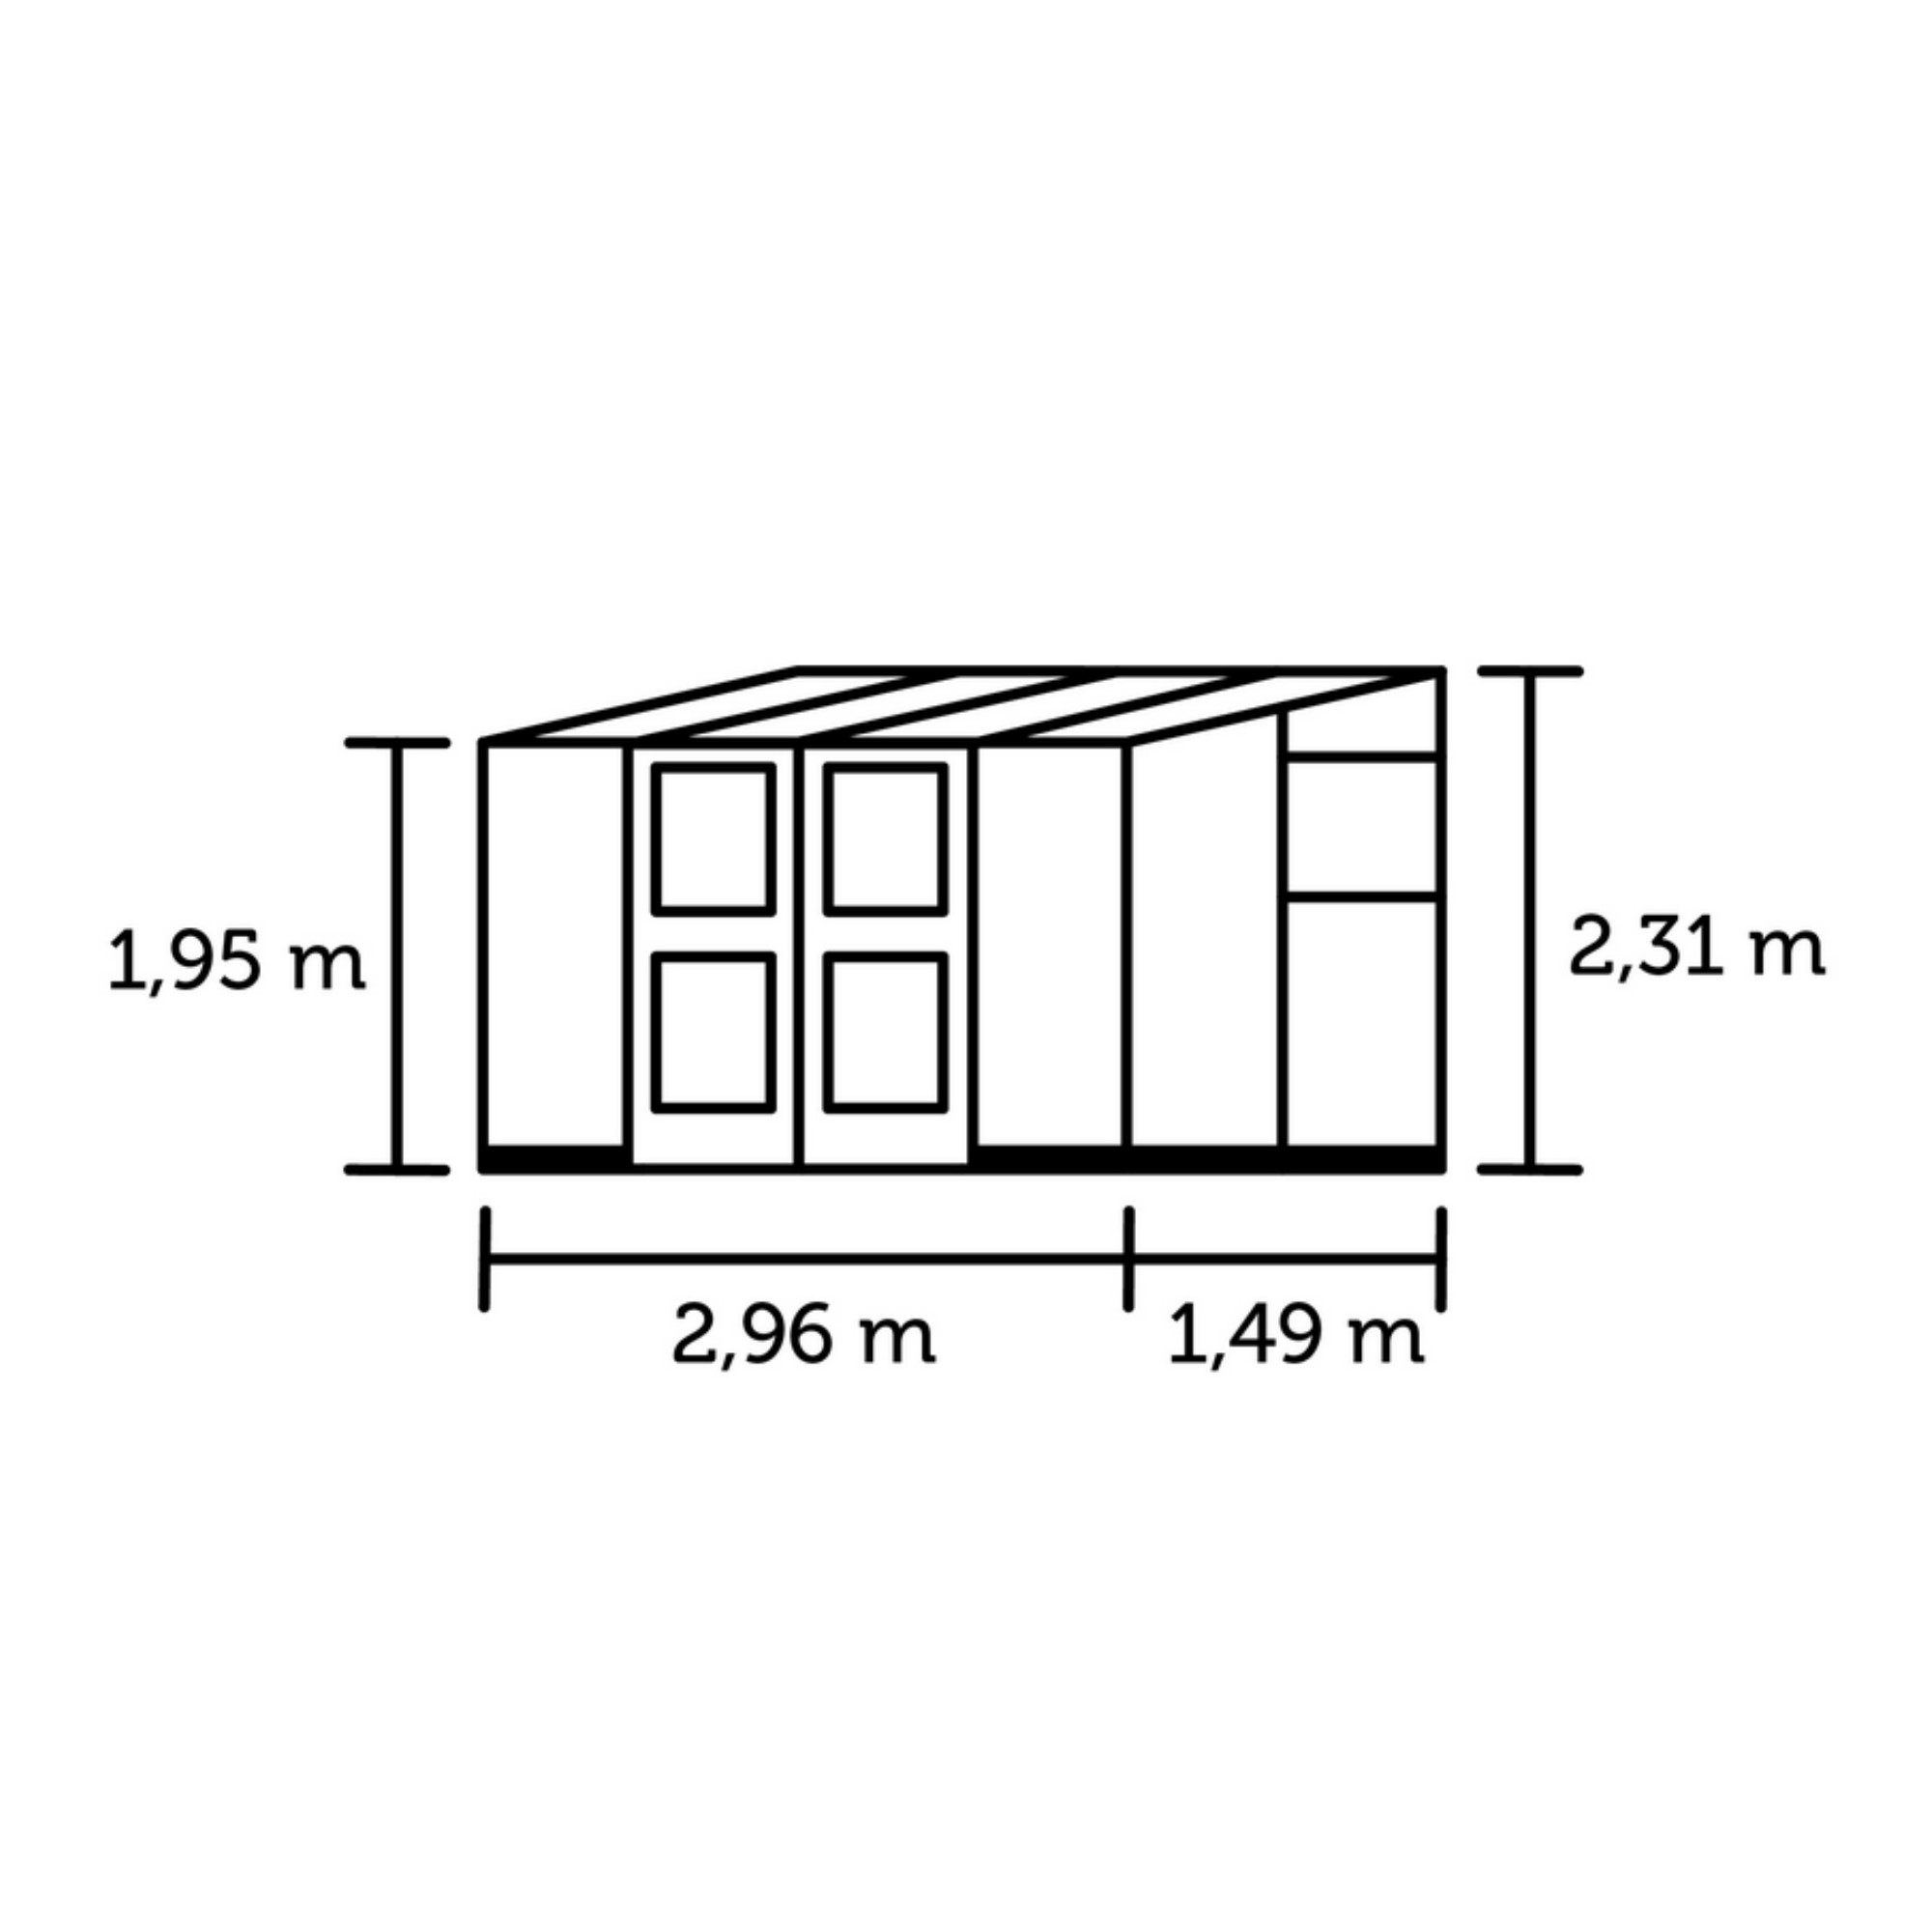 Anlehngewächshaus 'Veranda' 4,4 m² 296 x 149 cm 3 mm Sicherheitsglas/10 mm Doppelstegplatten anthrazit/schwarz + product picture